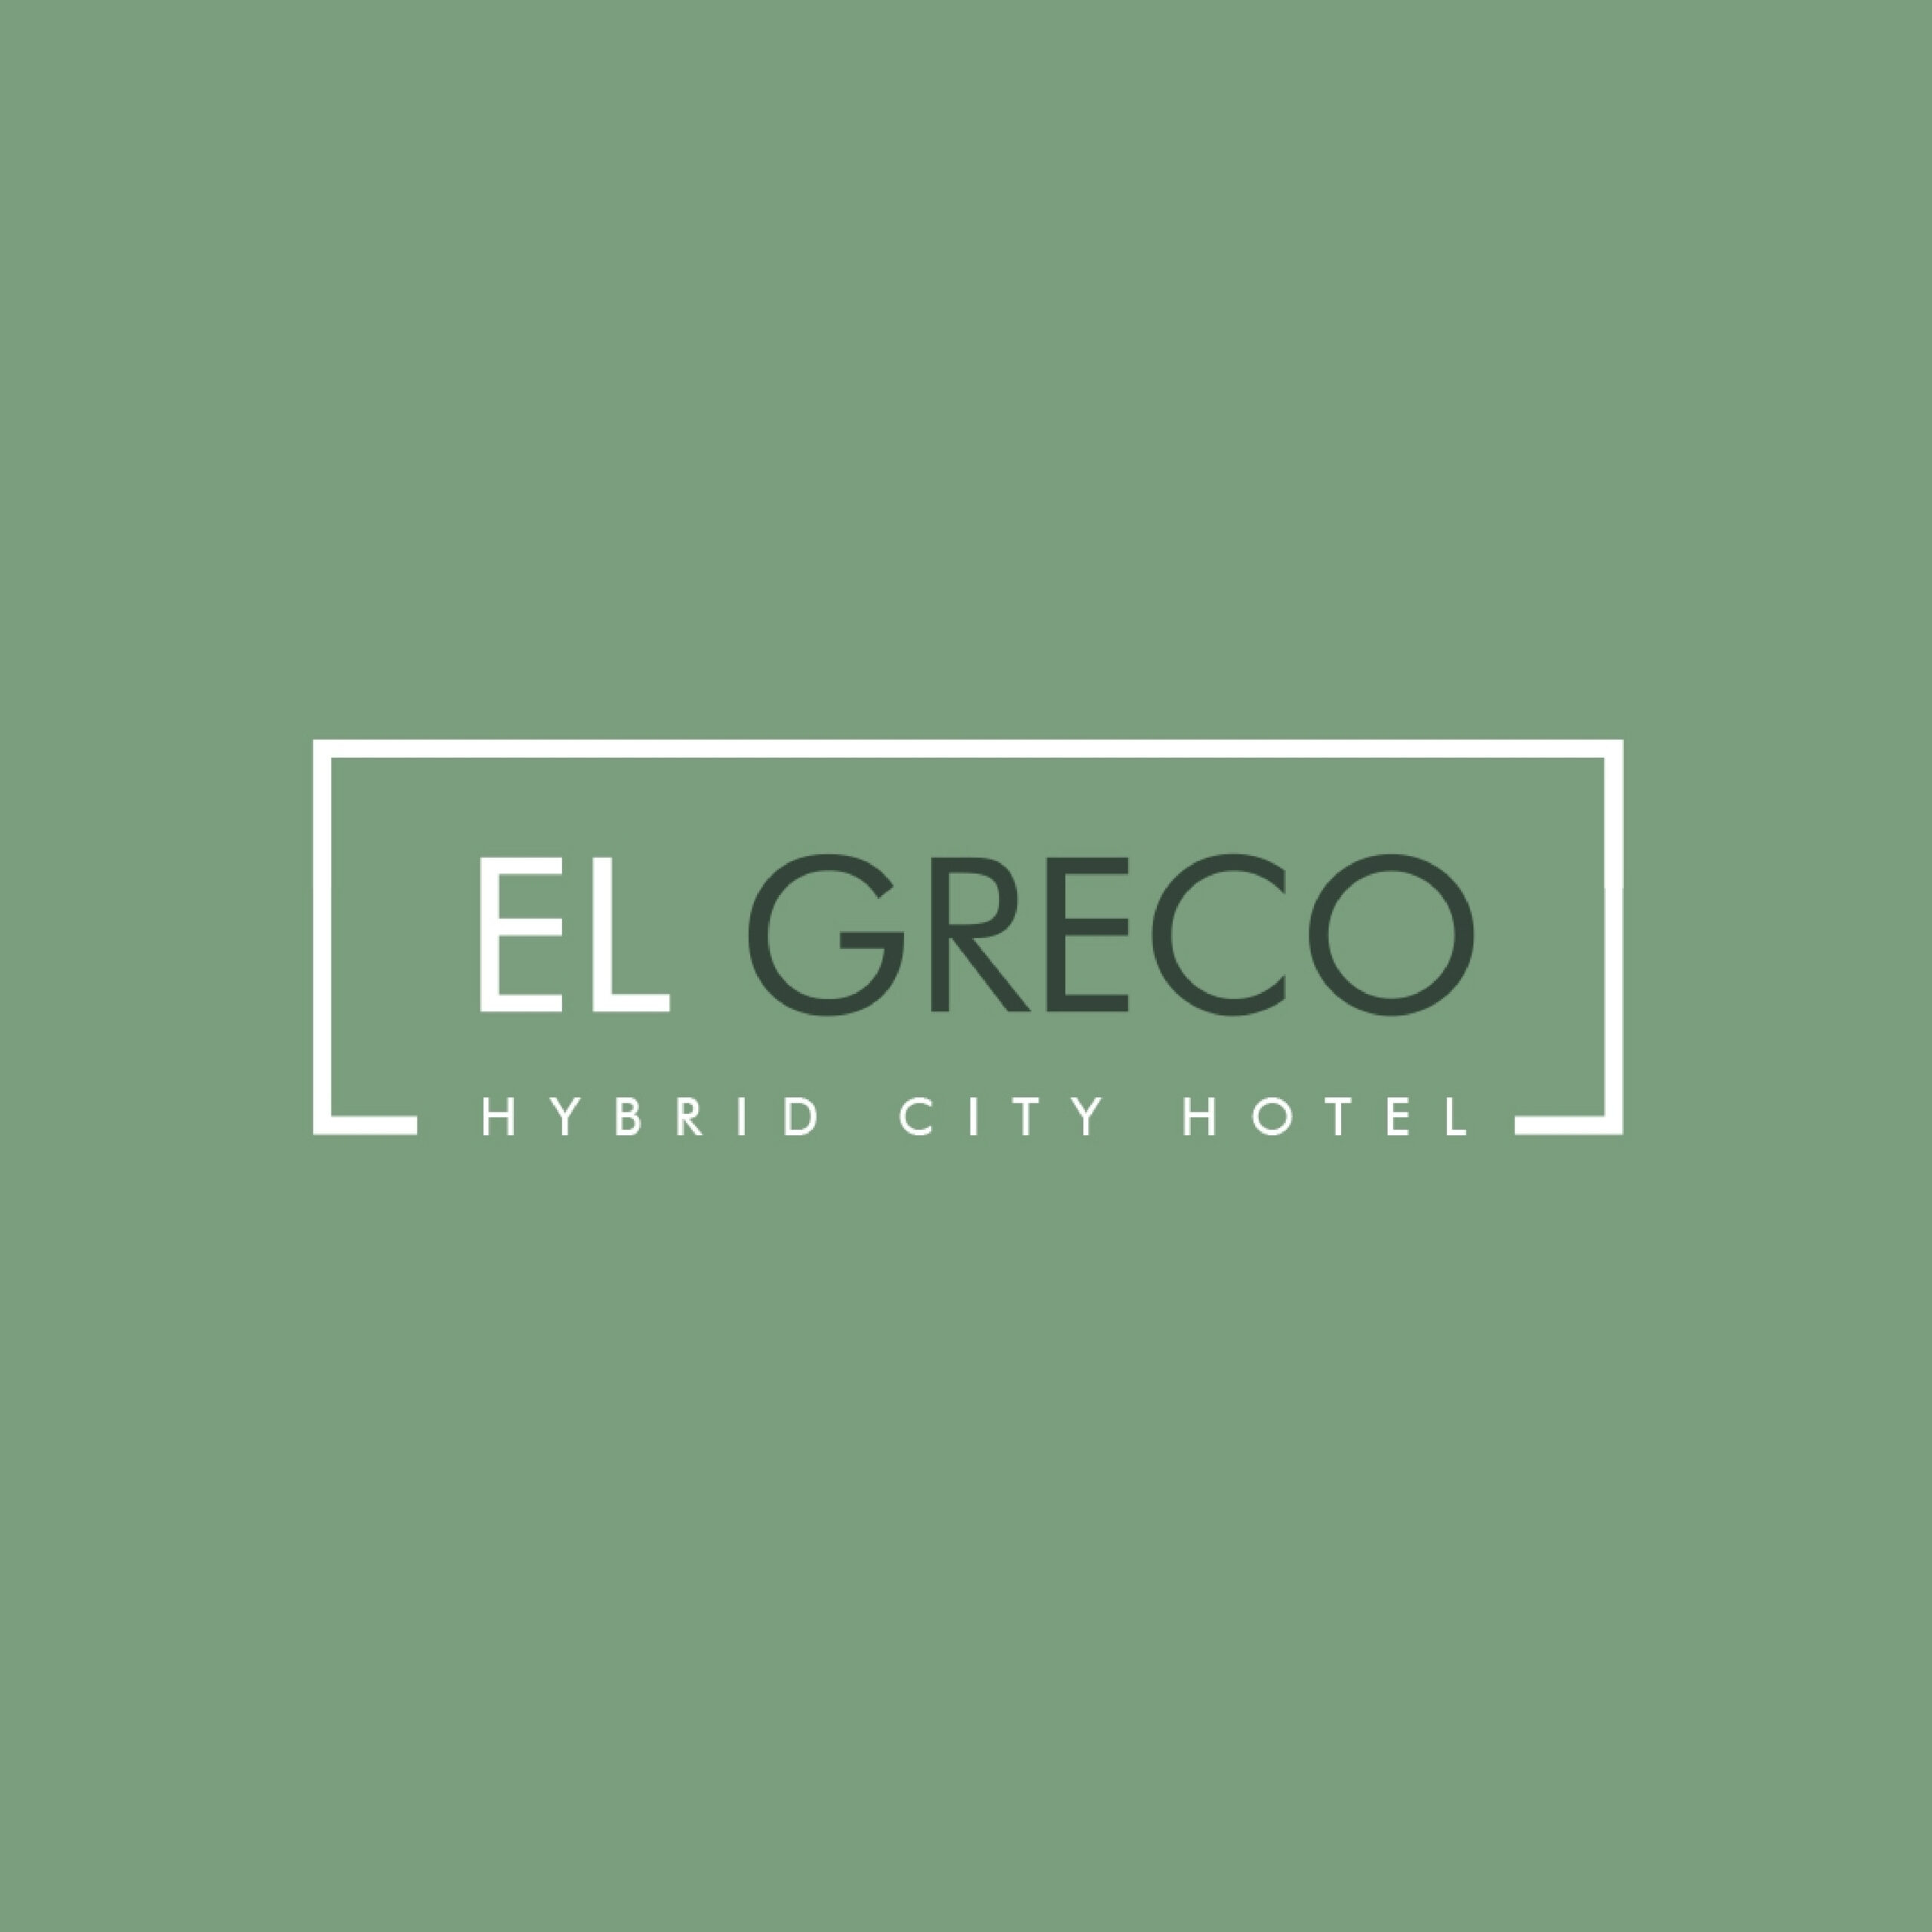 El Greco Hotel Logo